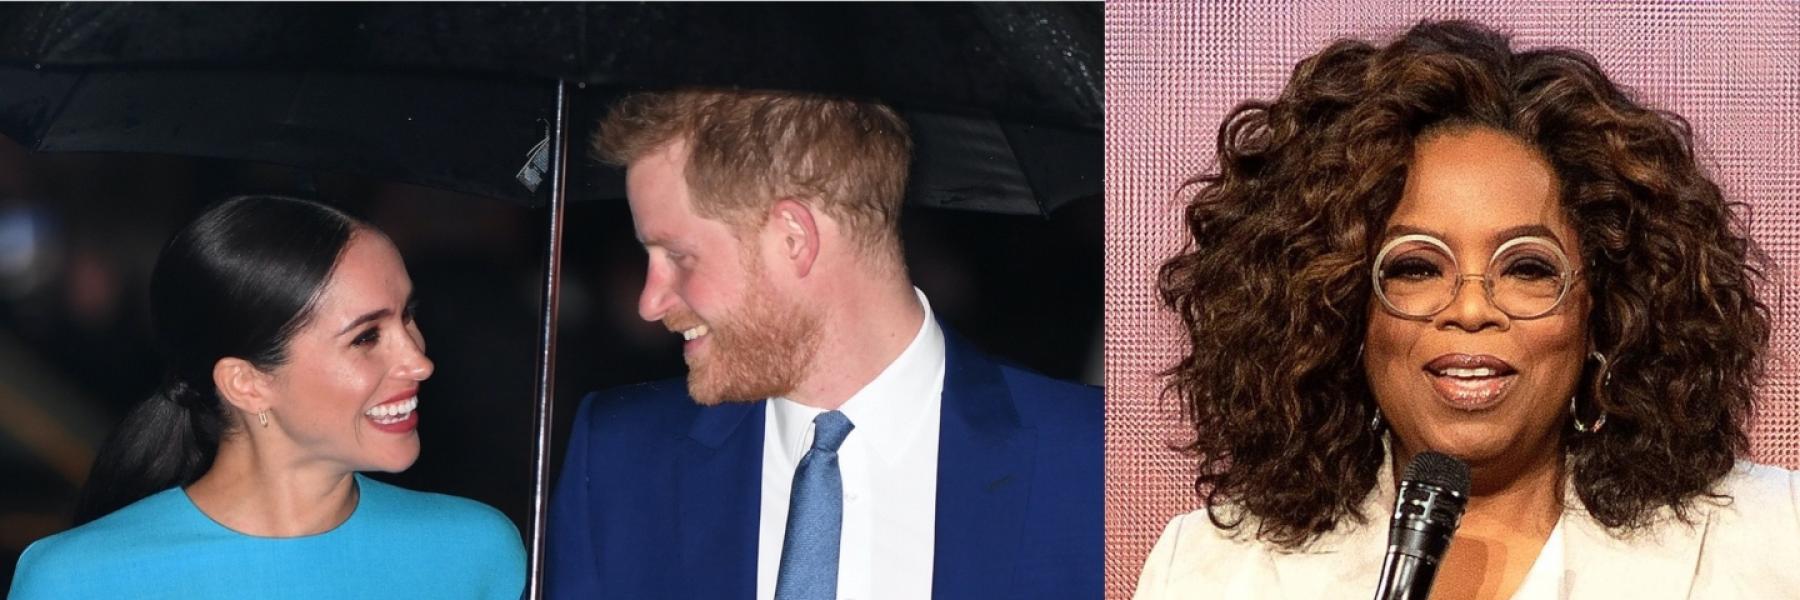 تقارير تكشف أسرارًا جديدة عن الأمير هاري وميغان قبل زفافهما.. وكم تقاضت أوبرا وينفري للقائهما؟